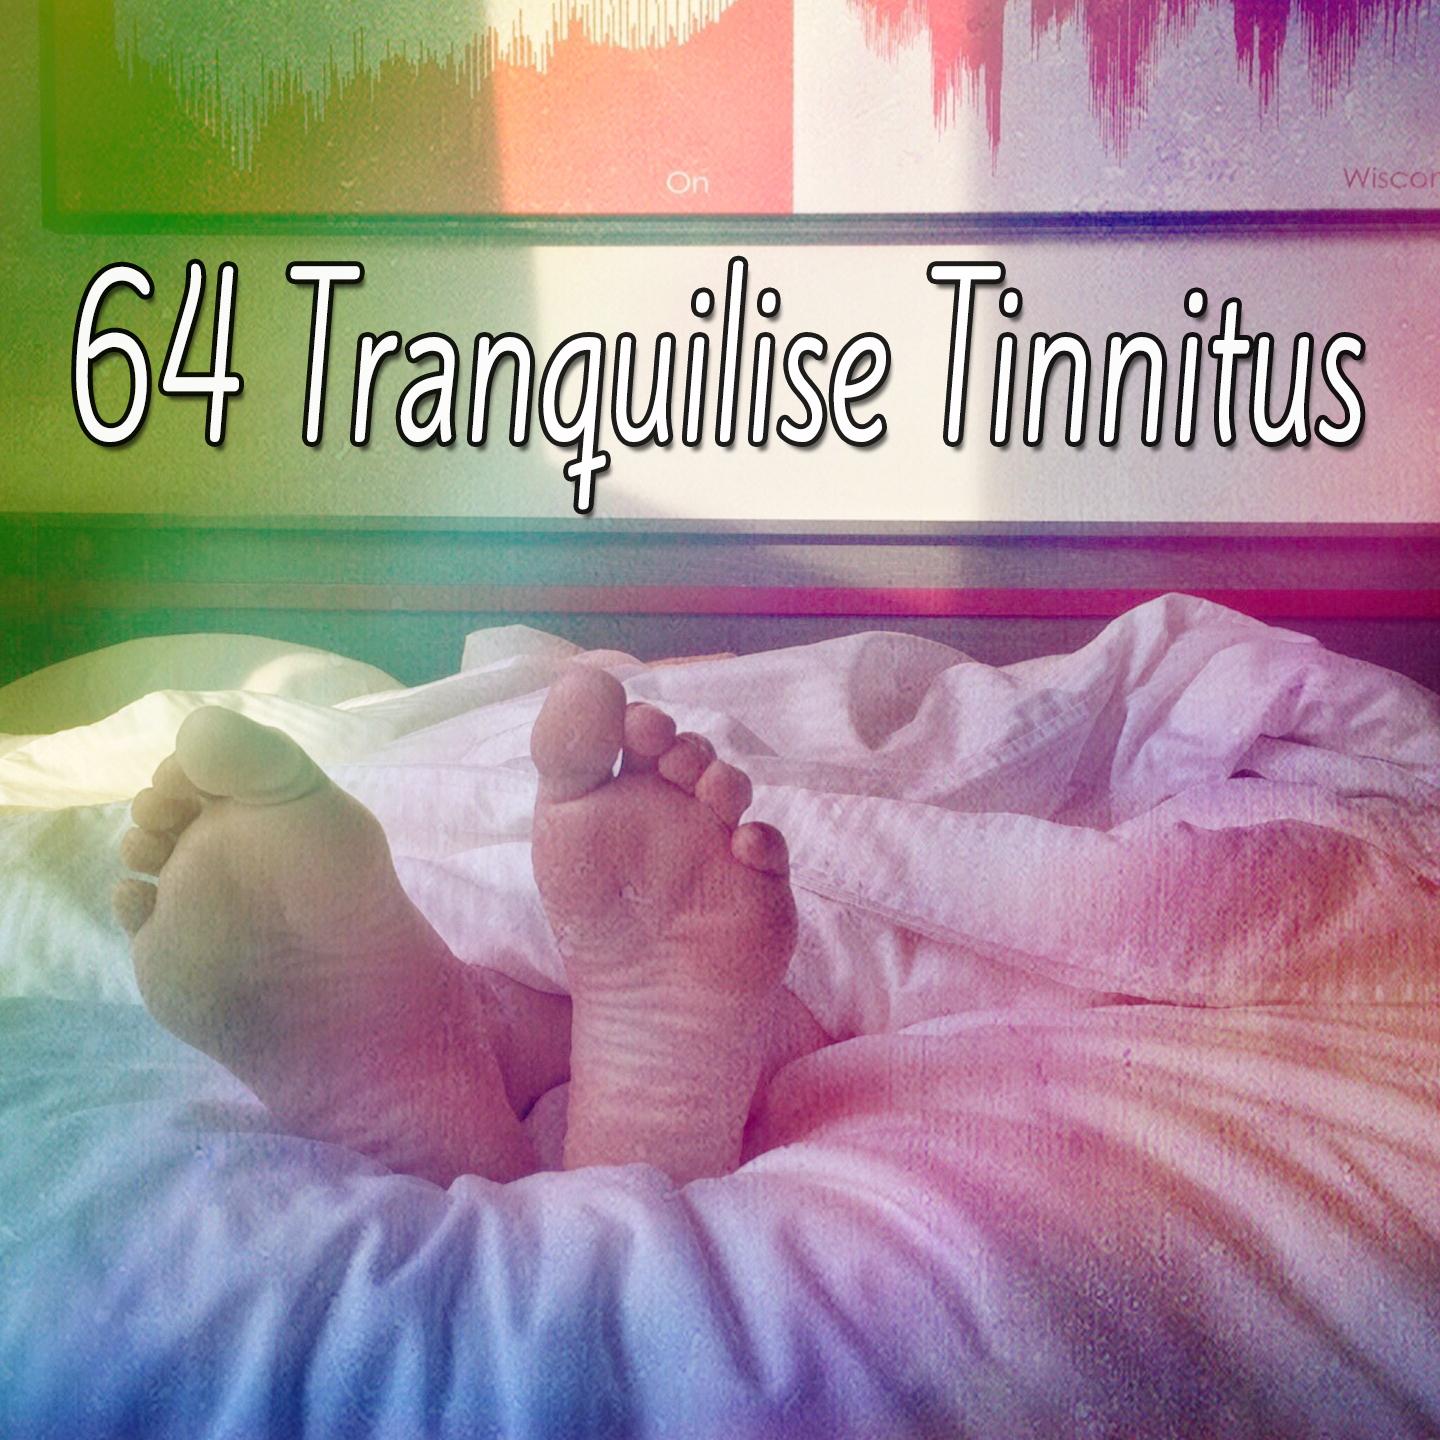 64 Tranquilise Tinnitus